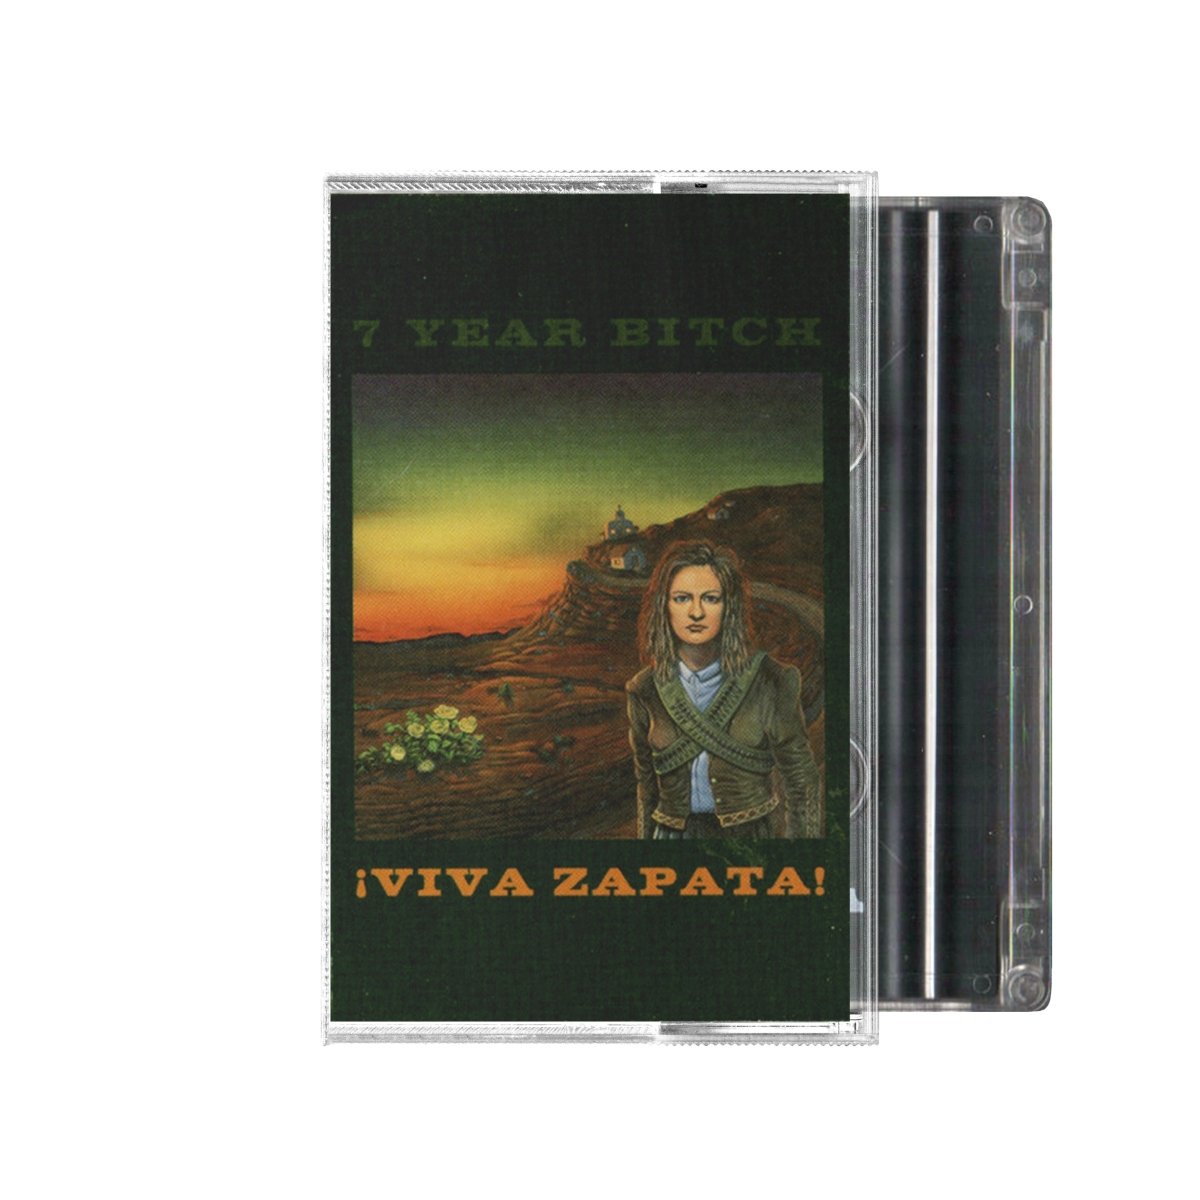 7 Year Bitch - ¡Viva Zapata! Vinyl